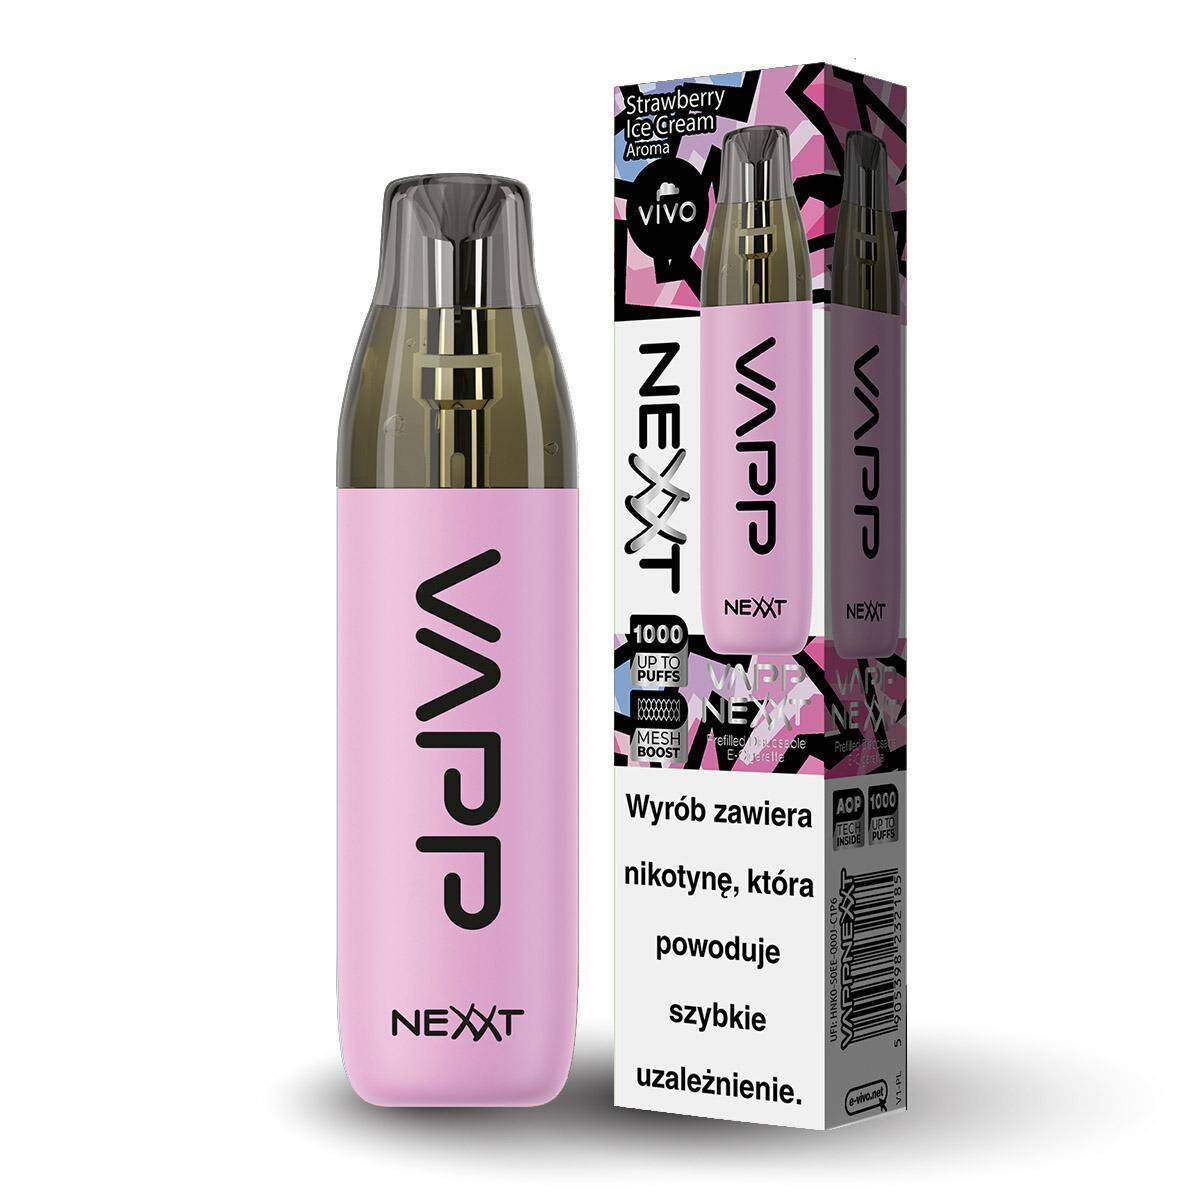 Disposable e-cigarette VIVO Nexxt - Strawberry Ice Cream 20mg